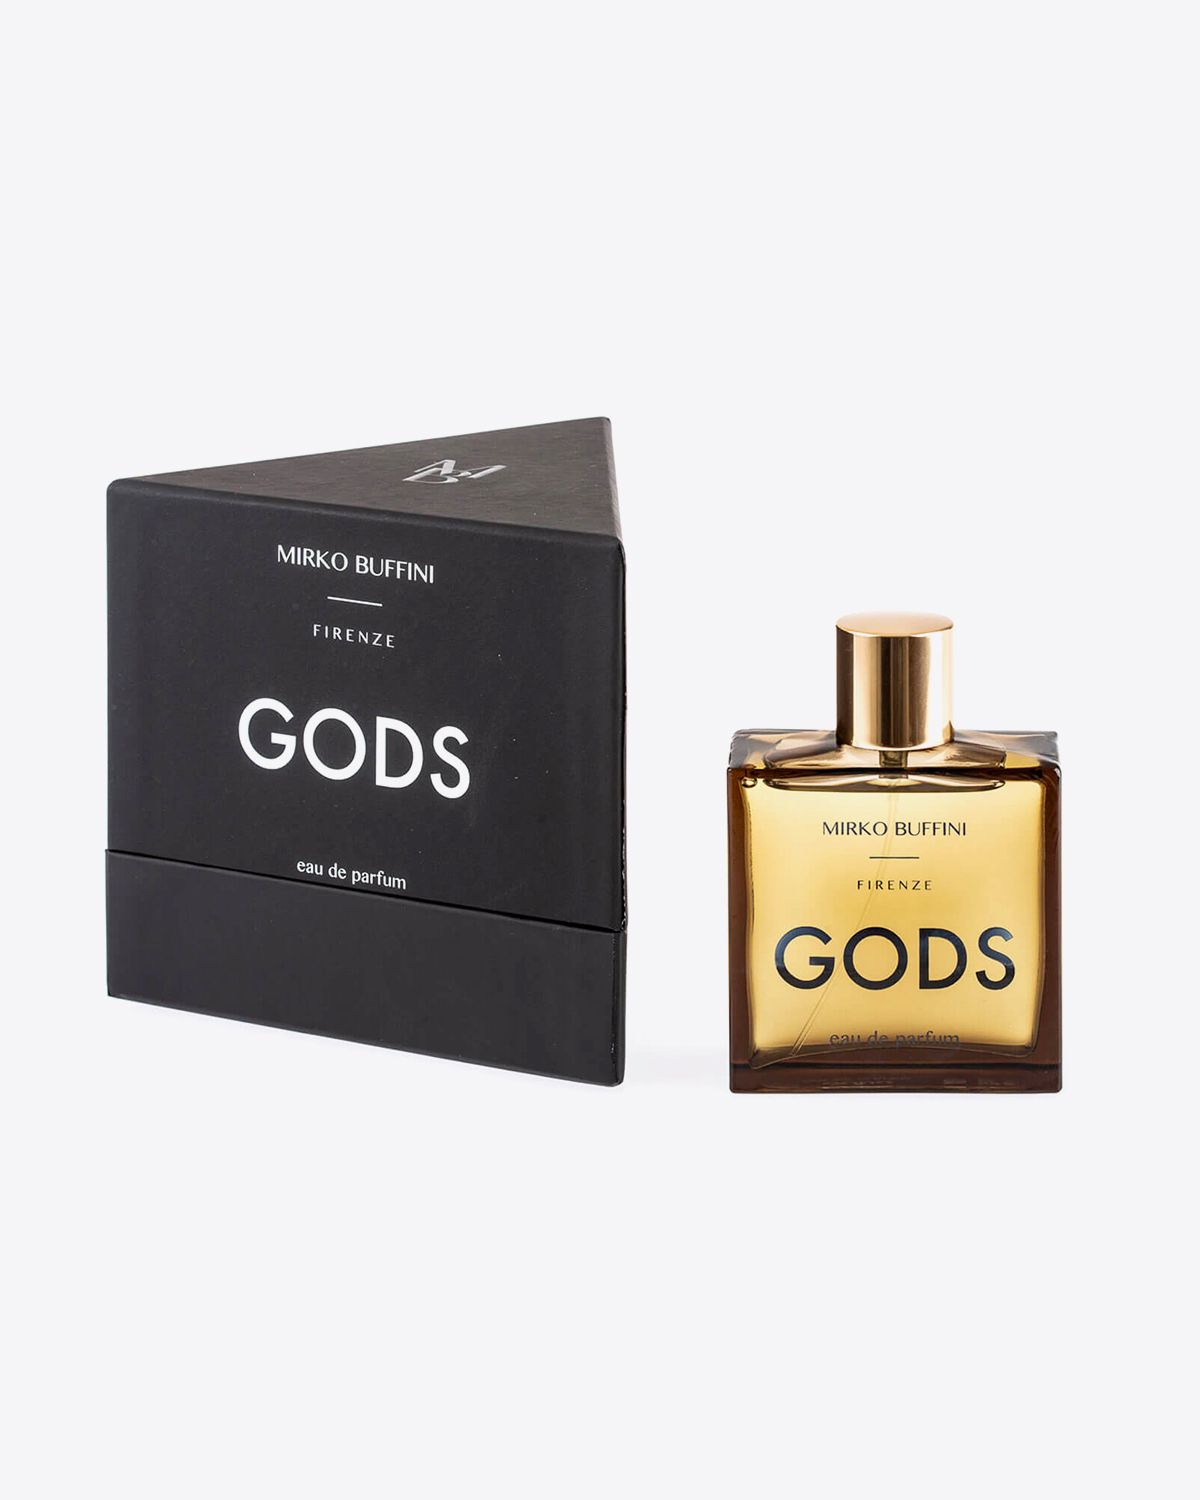 Parfum Gods Mirko Buffini. Flacon 30 ml vendu avec sa boite triangulaire noire. 